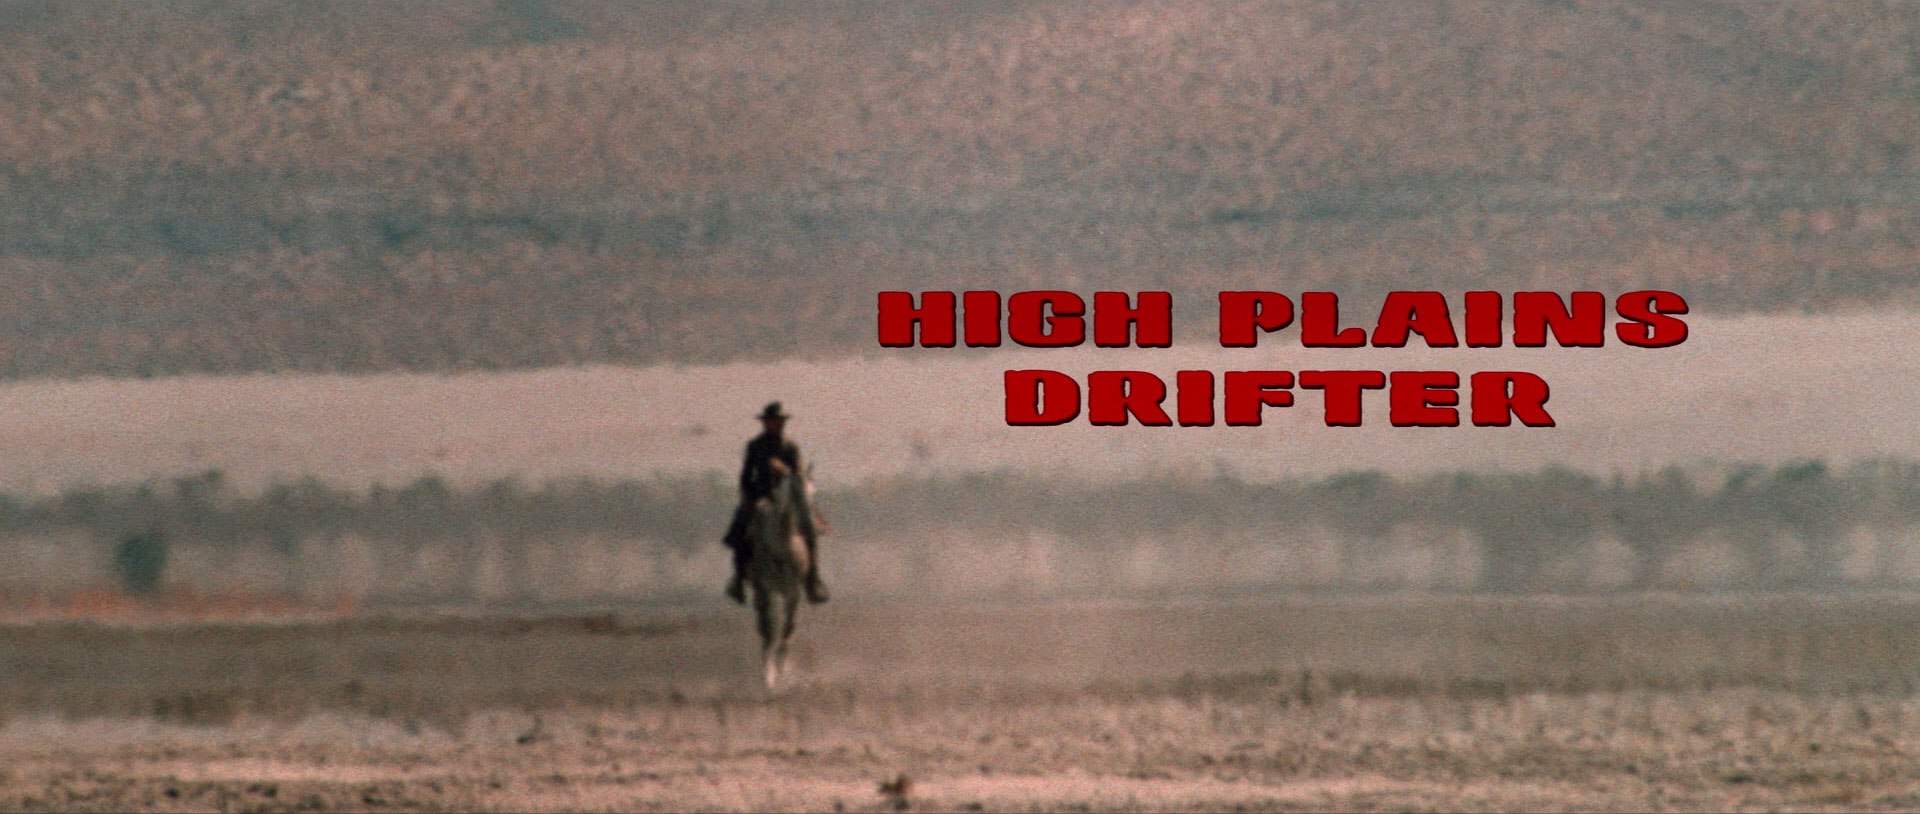 High Plains Drifter #1